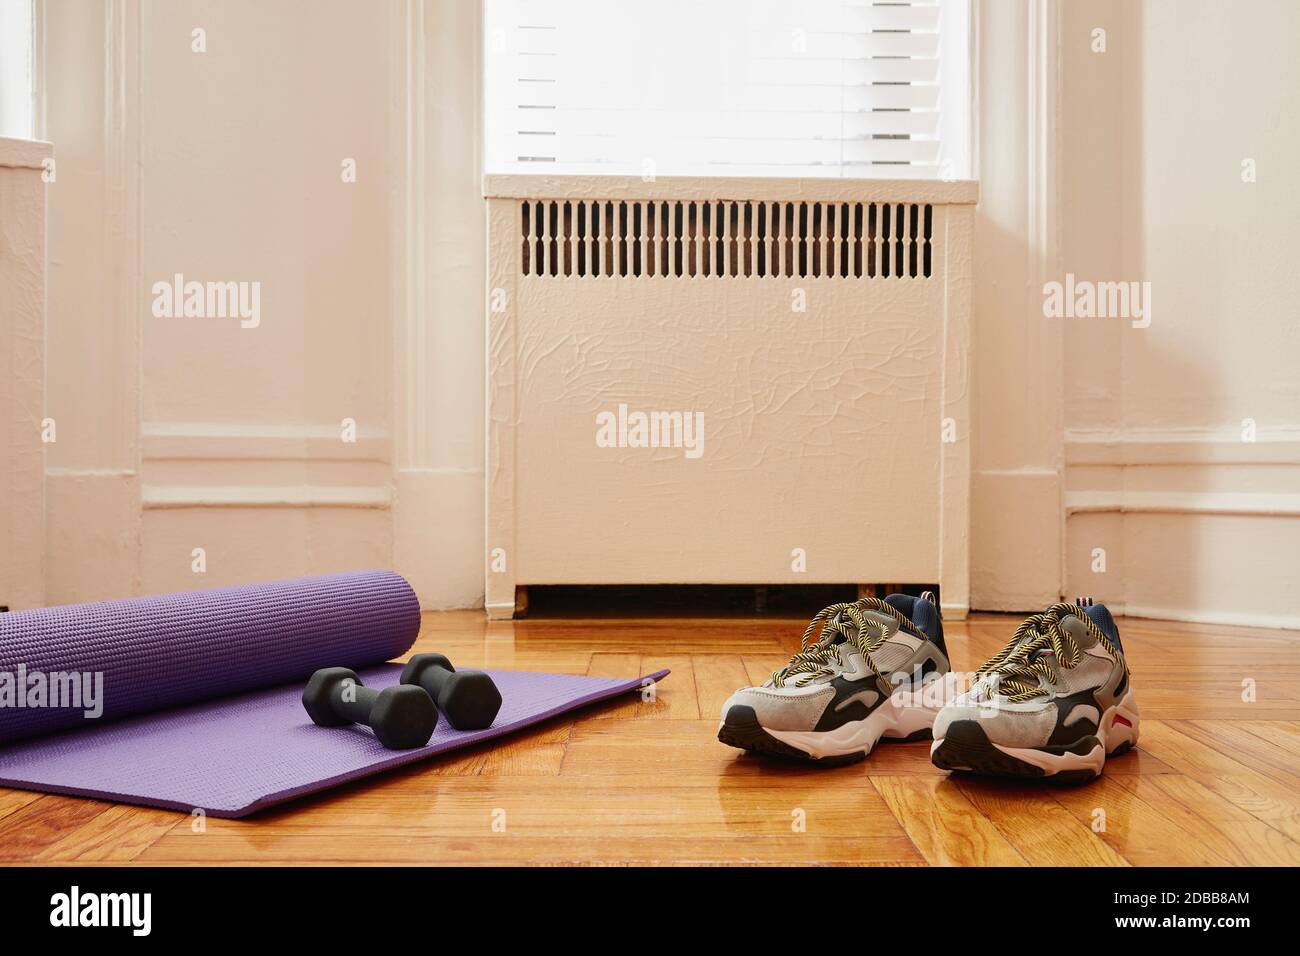 Tapis de yoga, poids et chaussures de sport sur le sol à la salle de gym de la maison Banque D'Images